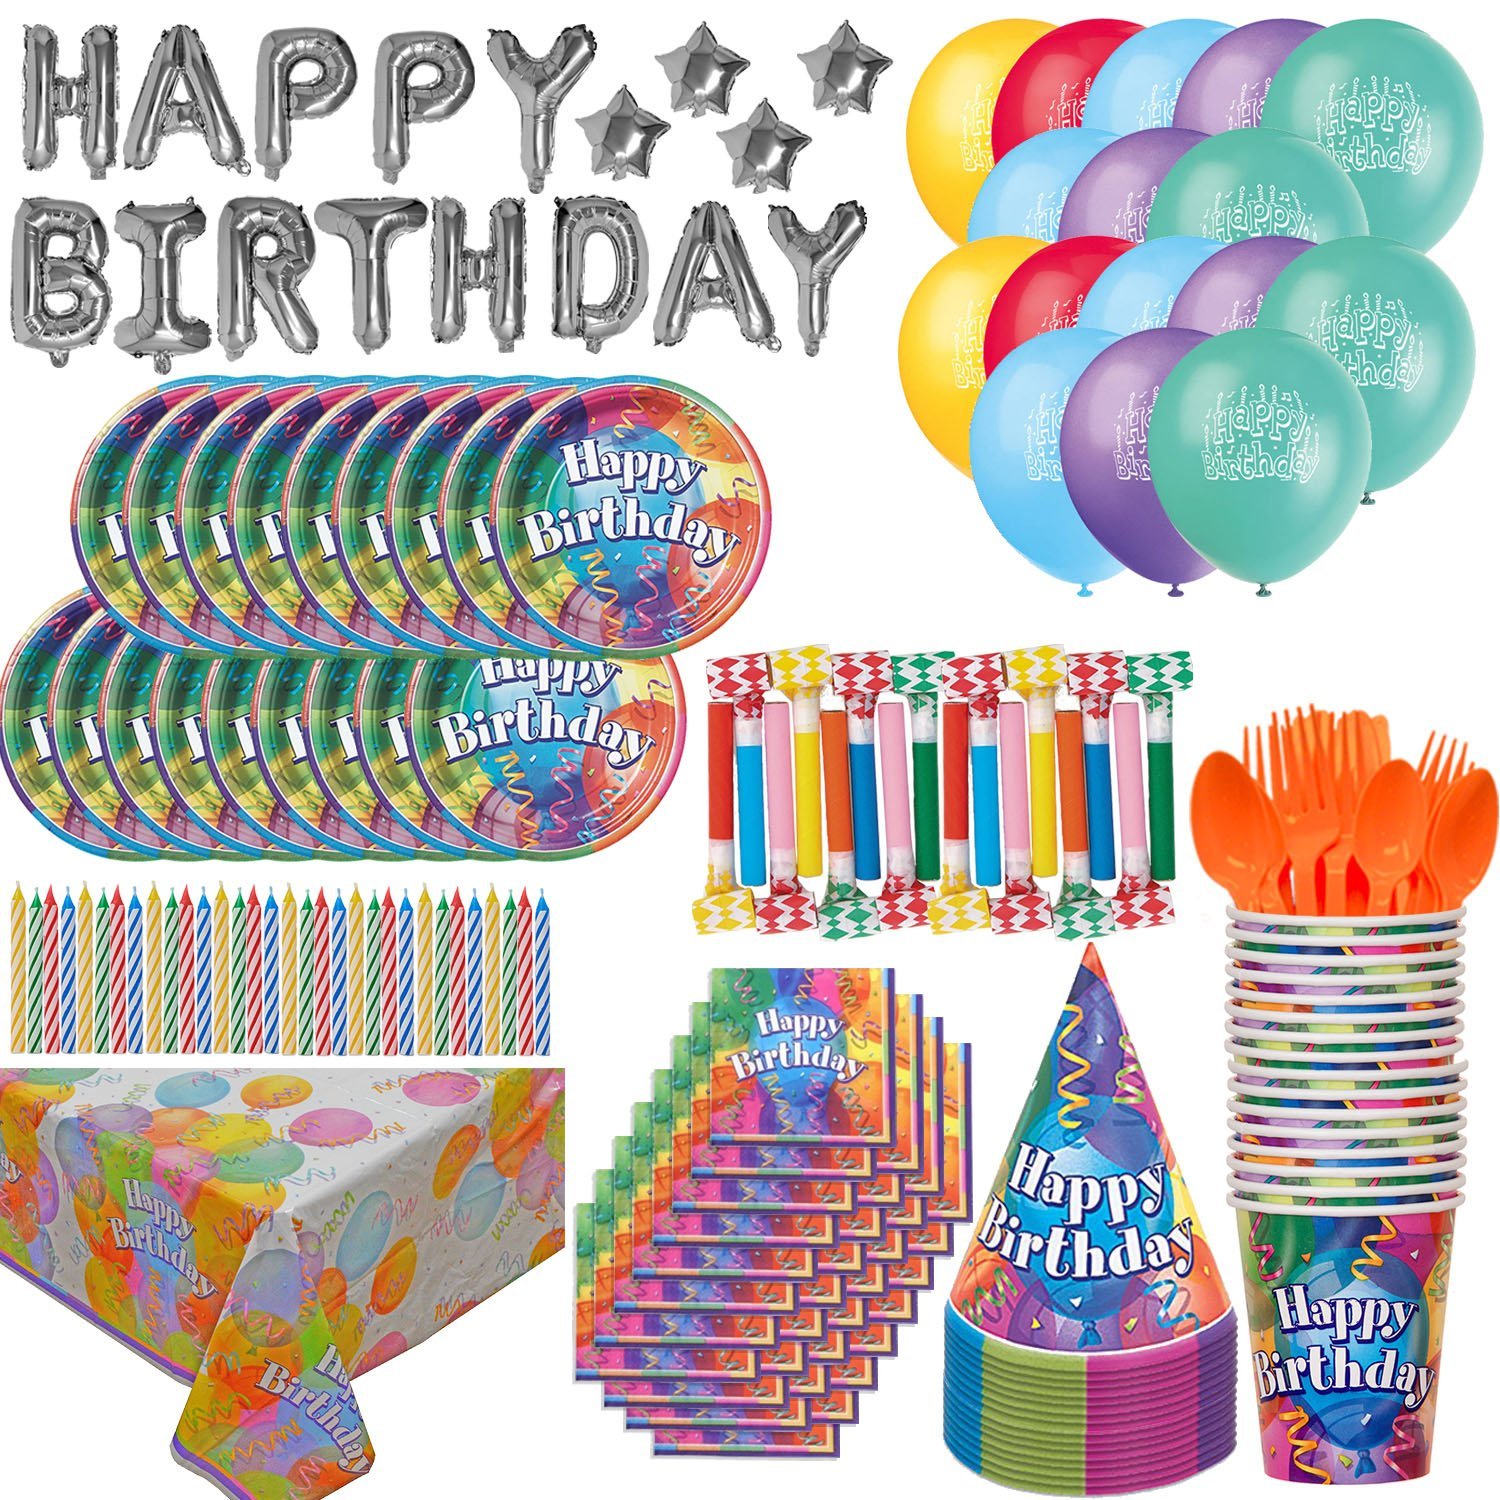 Birthday Supplies | Birthday Cards